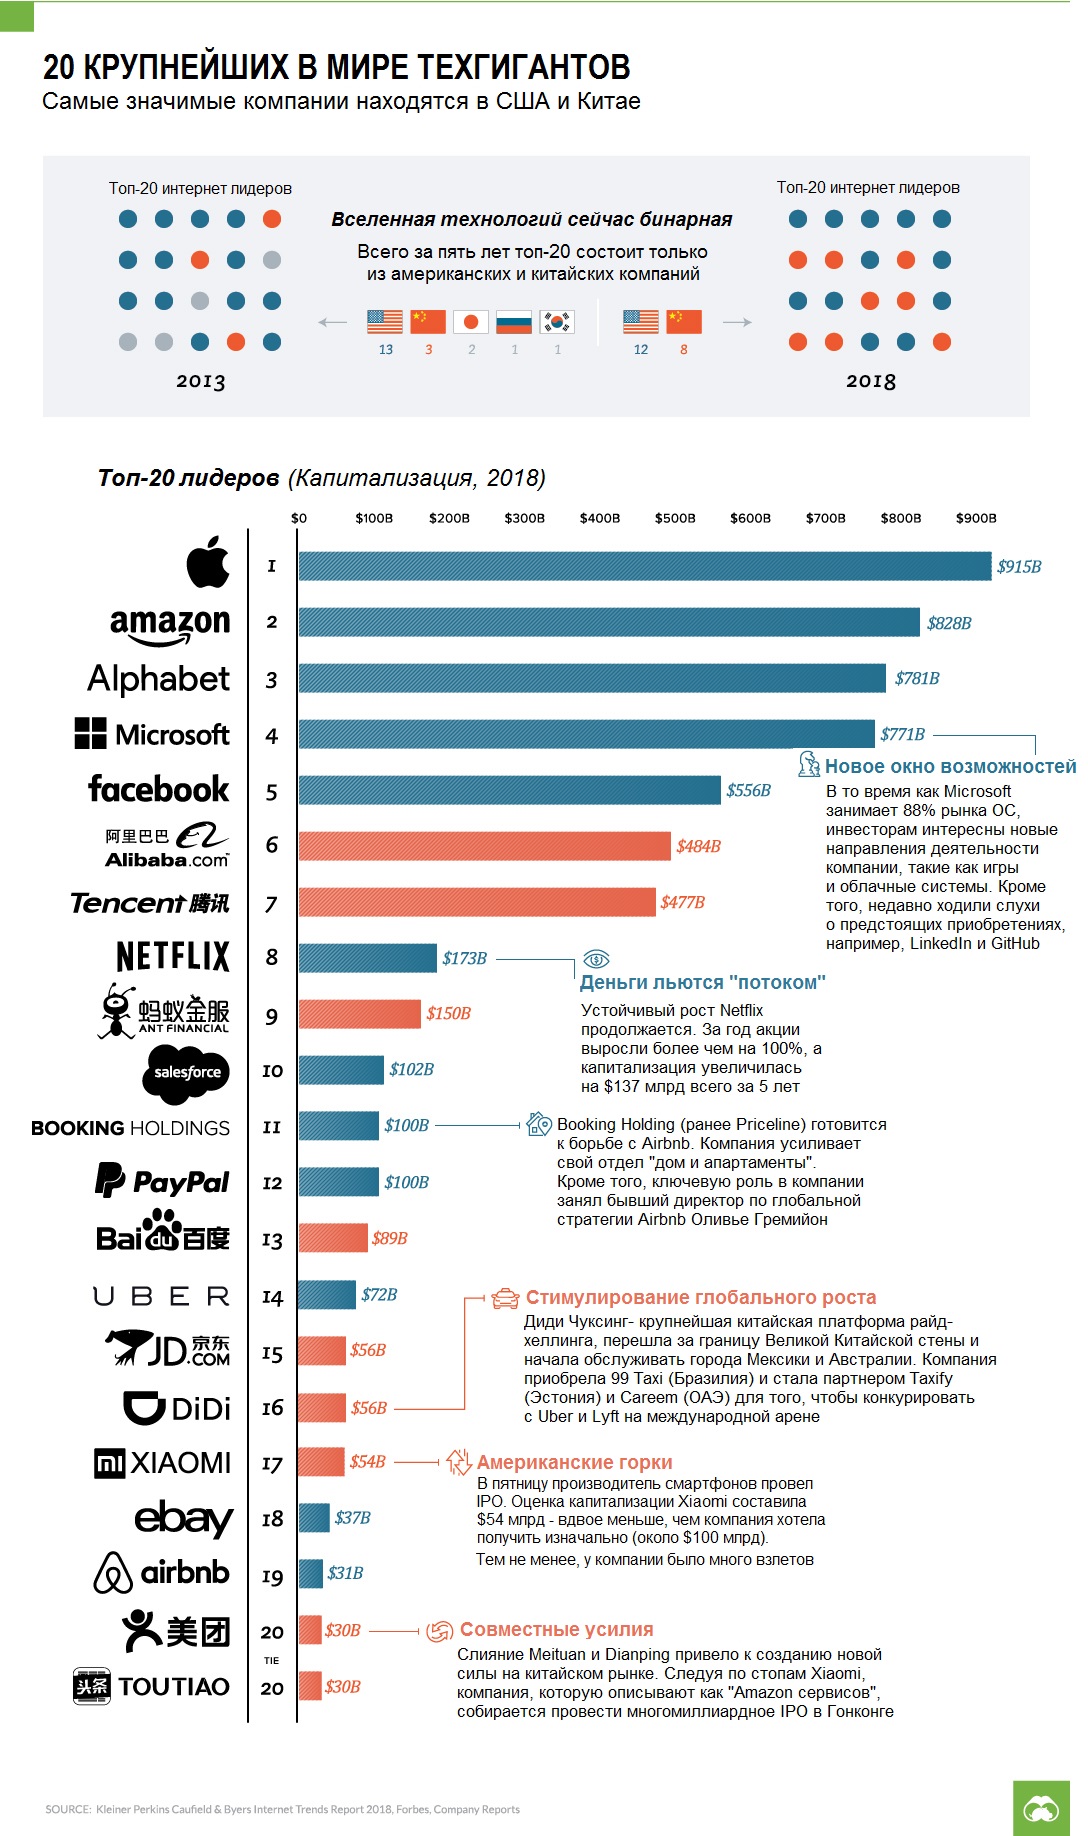 A világ 10 legjobb technológiai vállalata